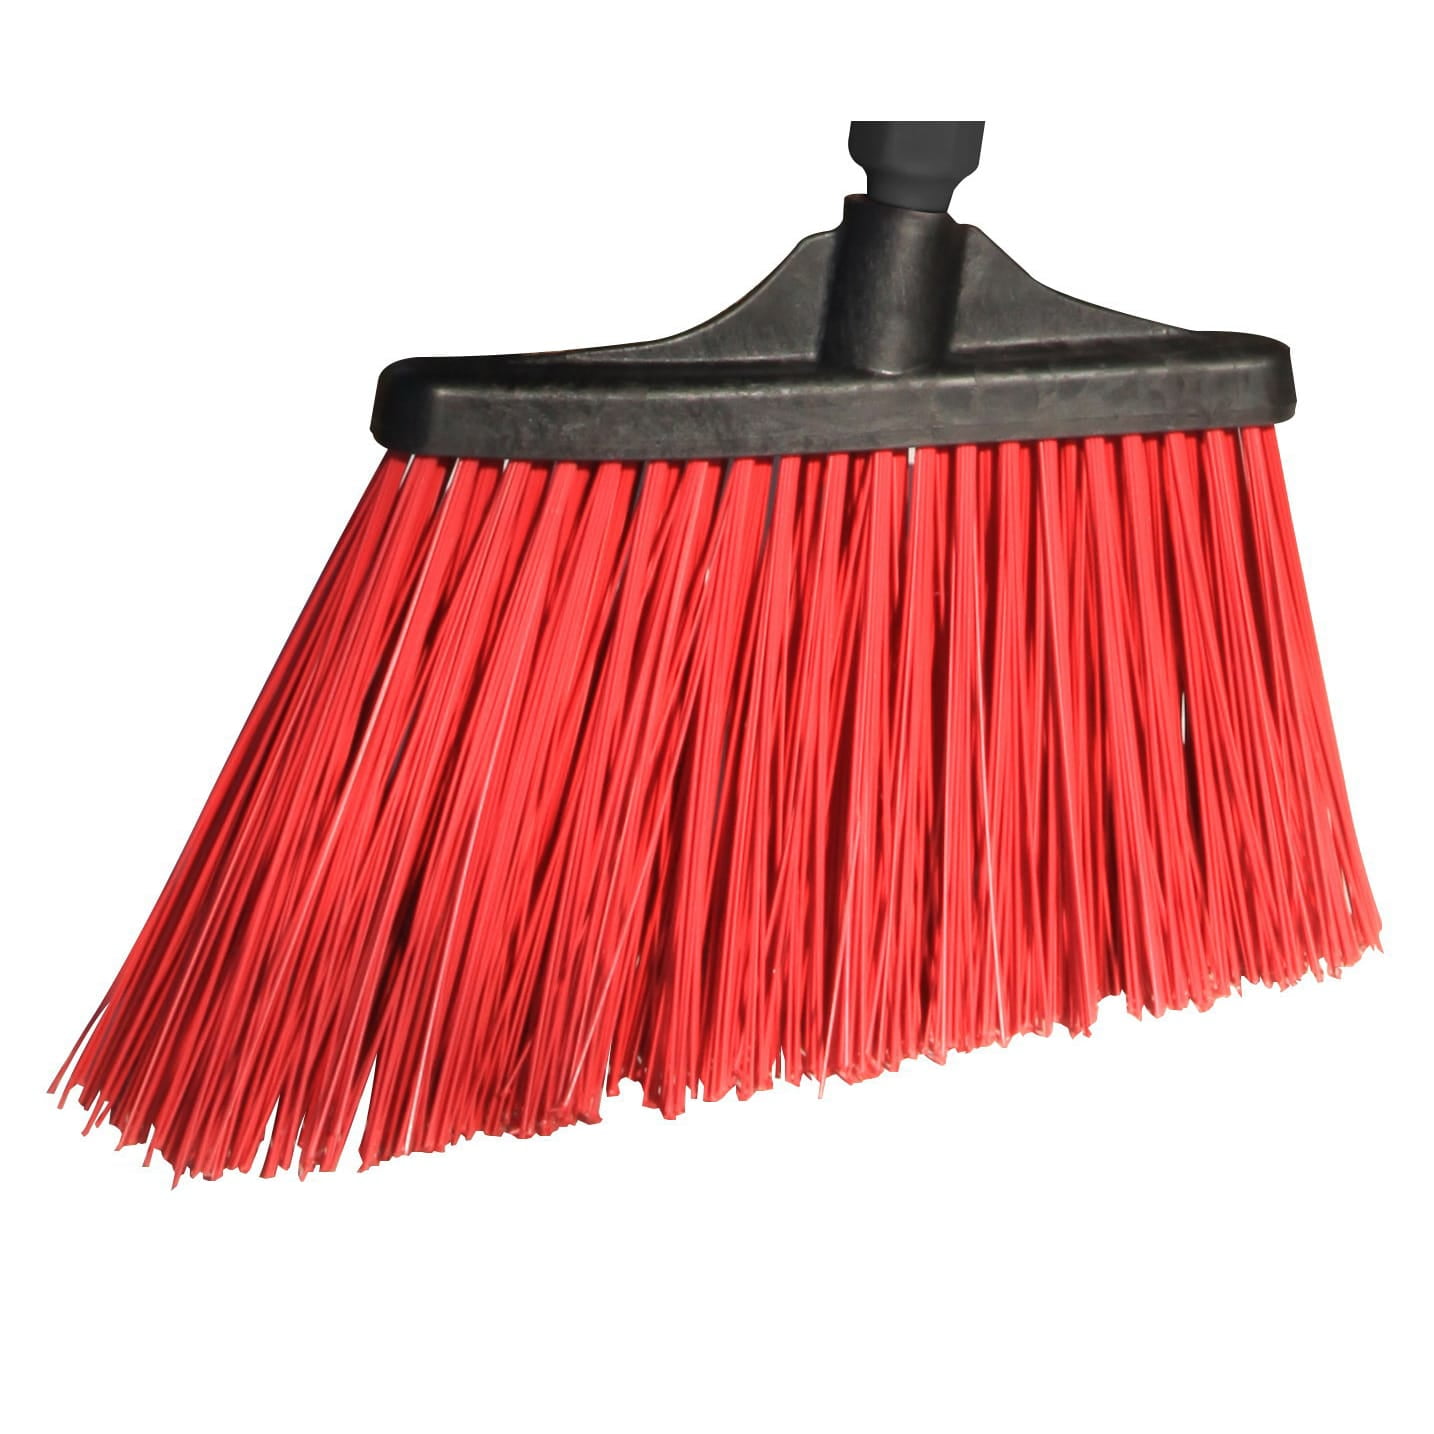 Fiesta Red Heavy Duty Long Bristle Broom Head - Fine Bristles